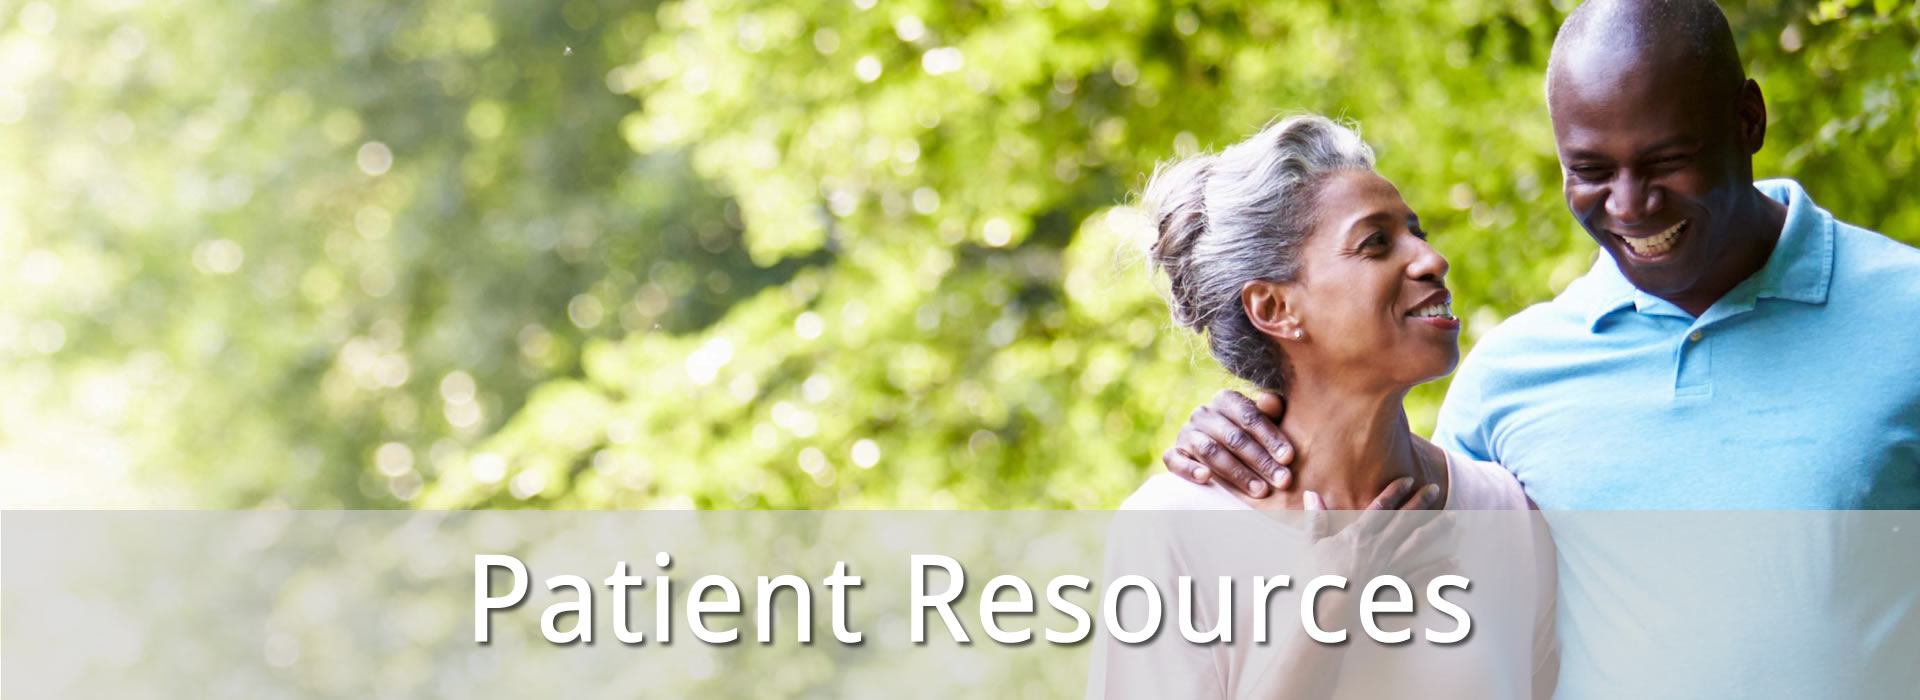 Patient Resources